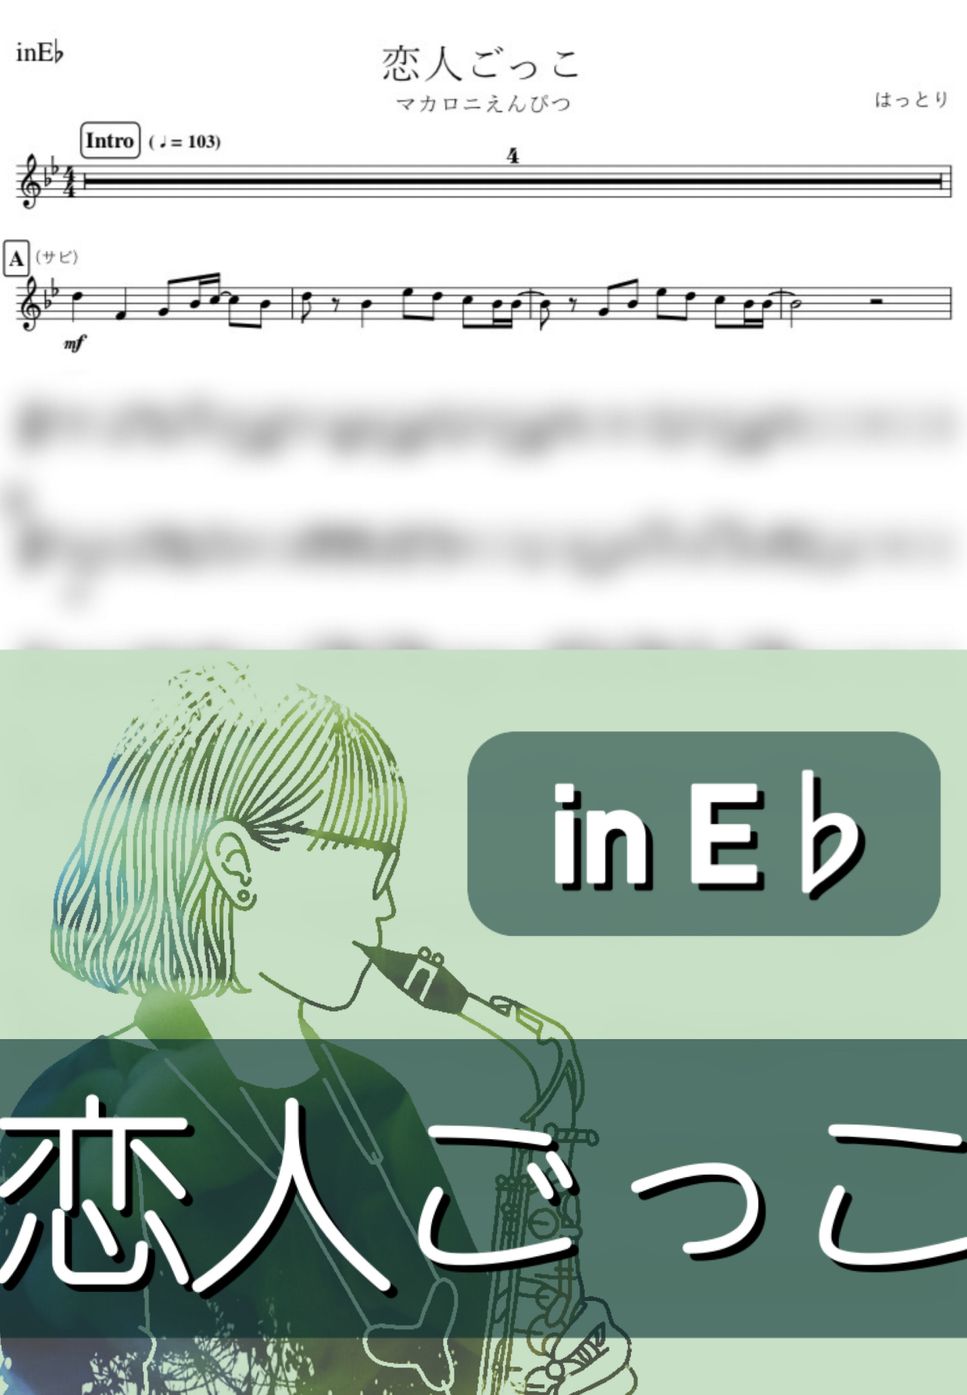 マカロニえんぴつ - 恋人ごっこ (E♭) by kanamusic